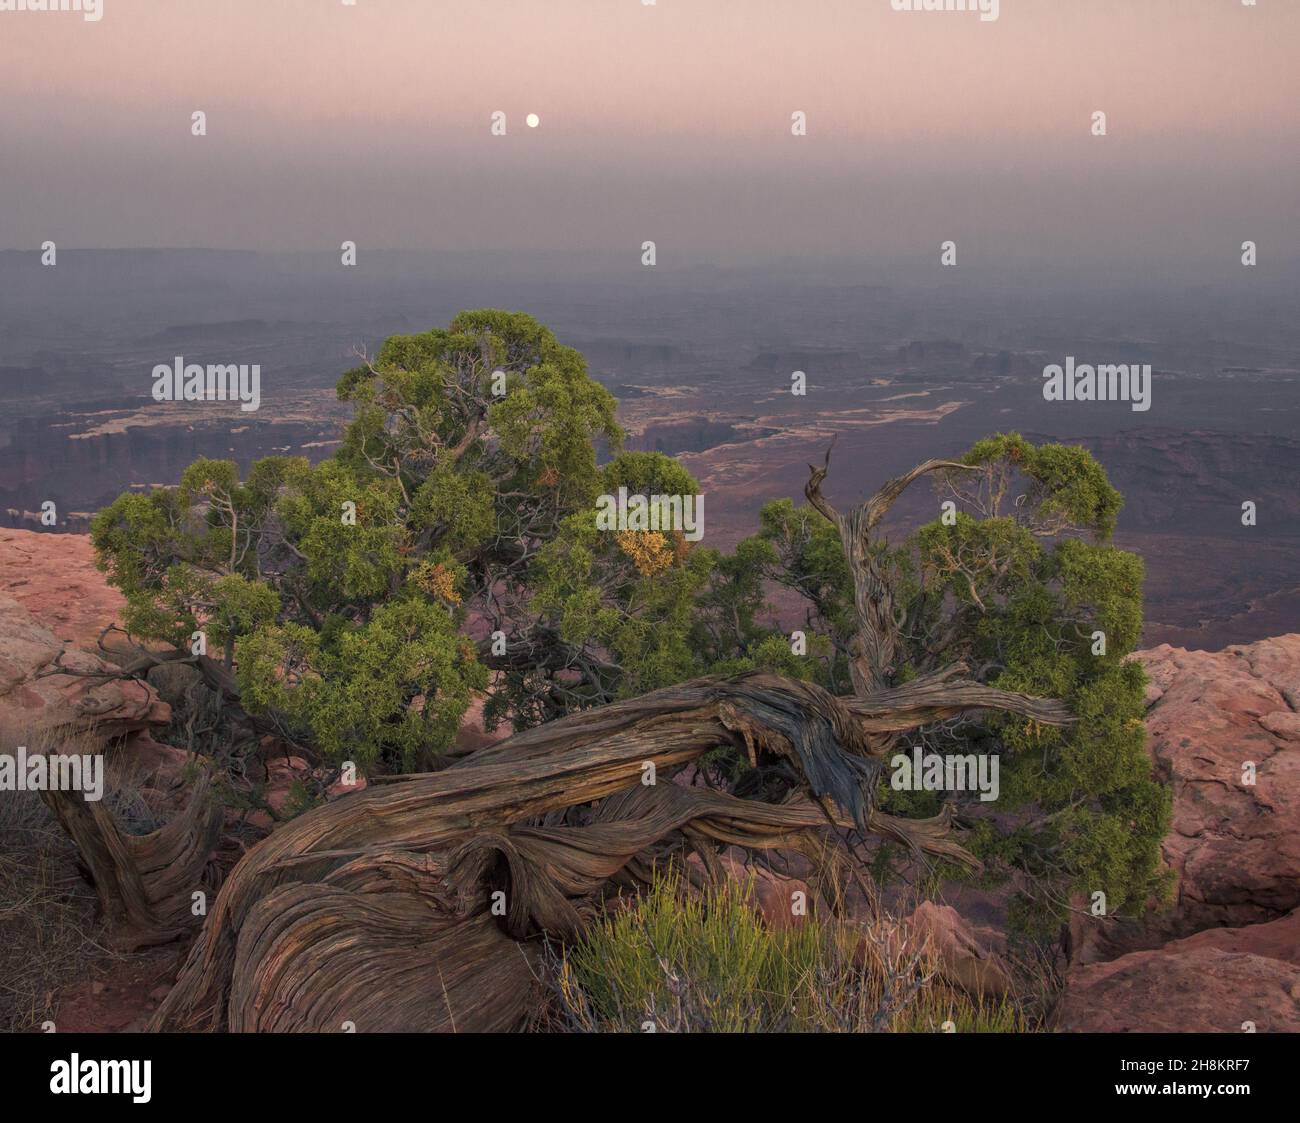 Hermosas vistas de rocas y árboles verdes brillantes, Parque Nacional Canyonlands, Utah, Estados Unidos Foto de stock